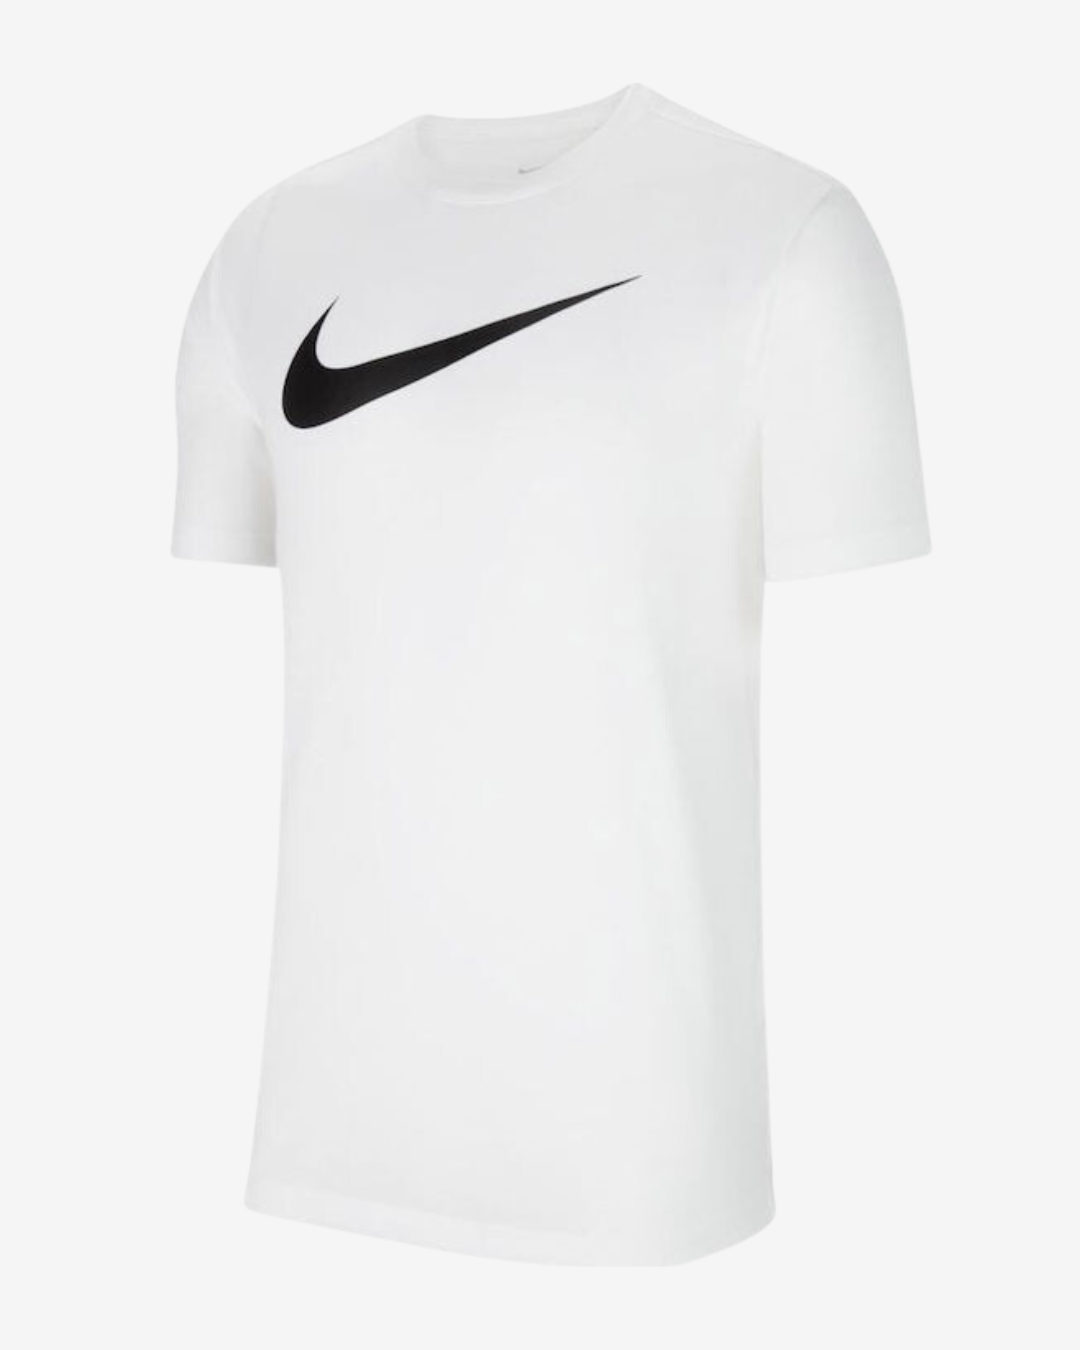 Billede af Nike Dri-fit park 20 t-shirt - Hvid - Str. L - Modish.dk